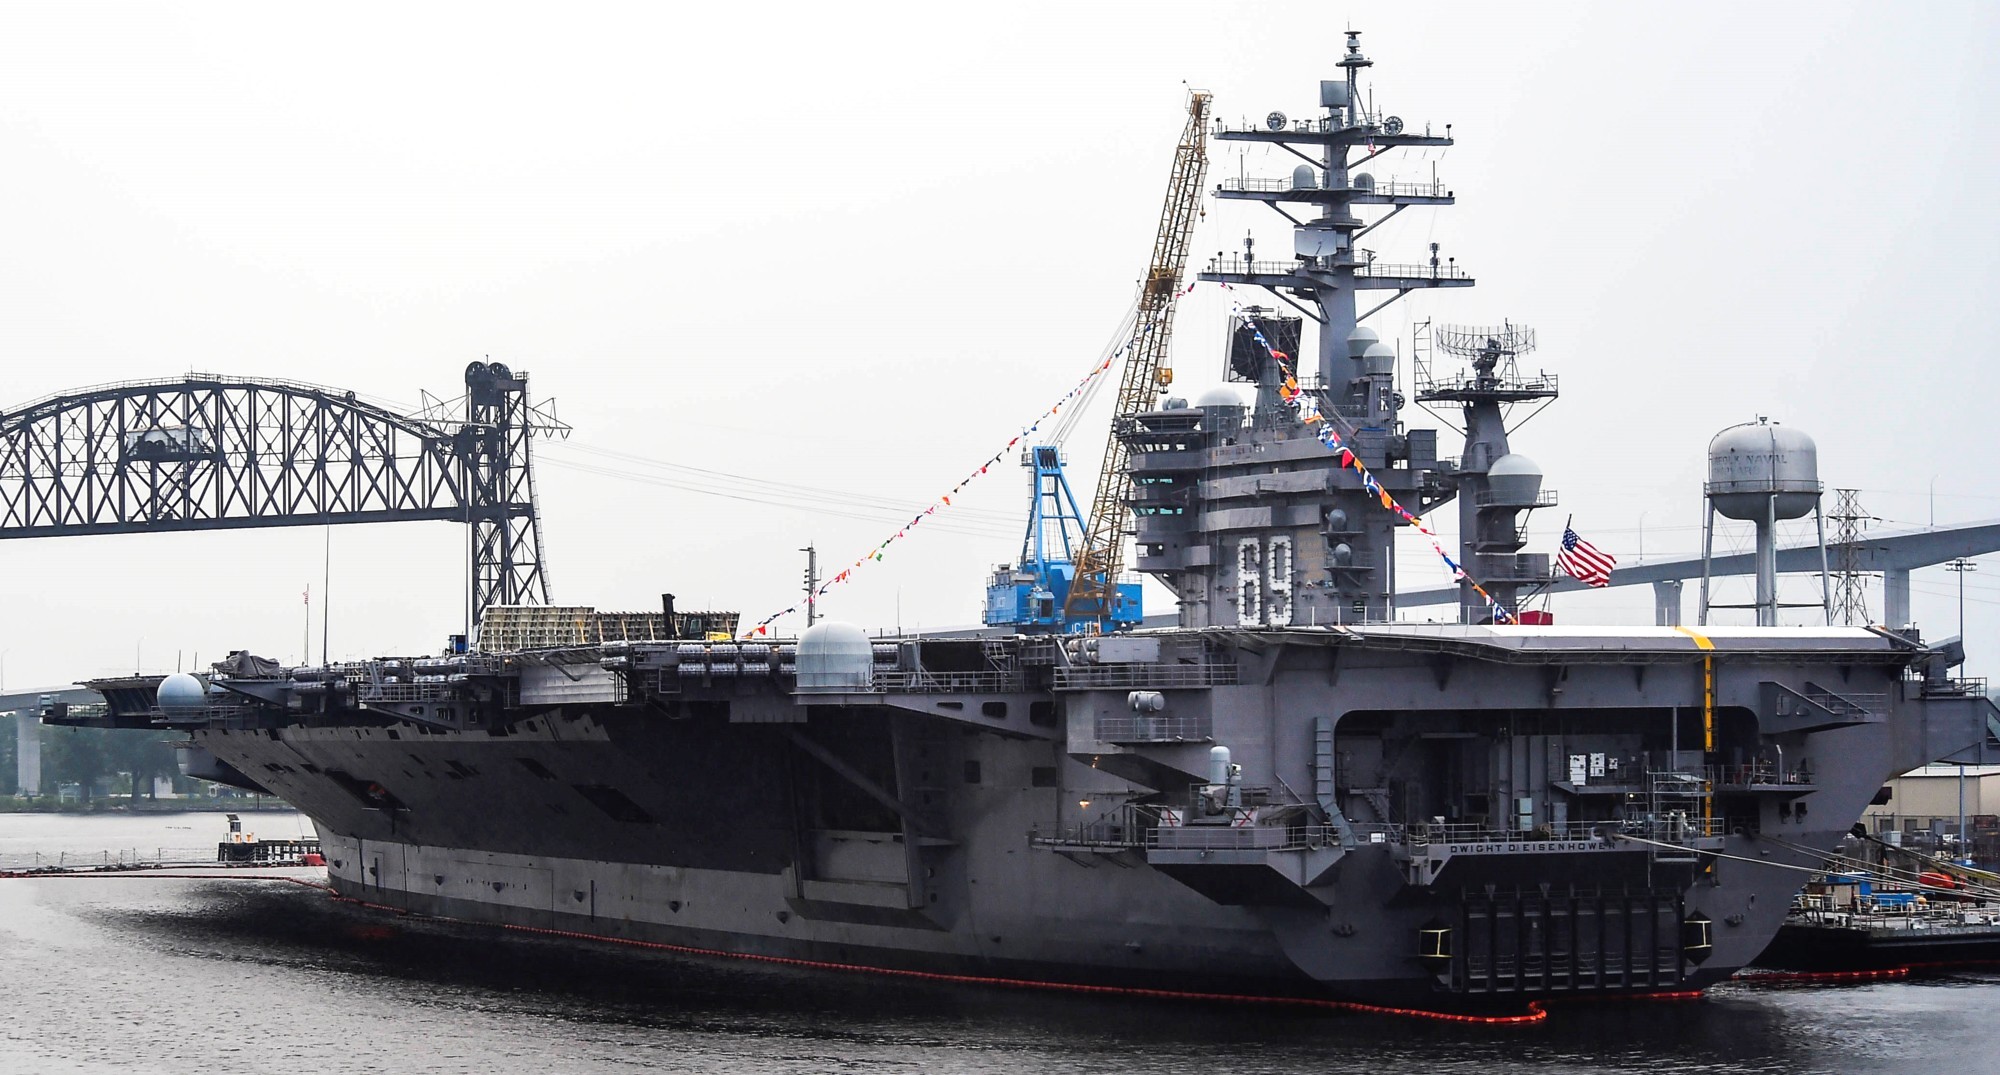 cvn-69 uss dwight d. eisenhower aircraft carrier us navy norfolk naval shipyard dry dock dpia 59